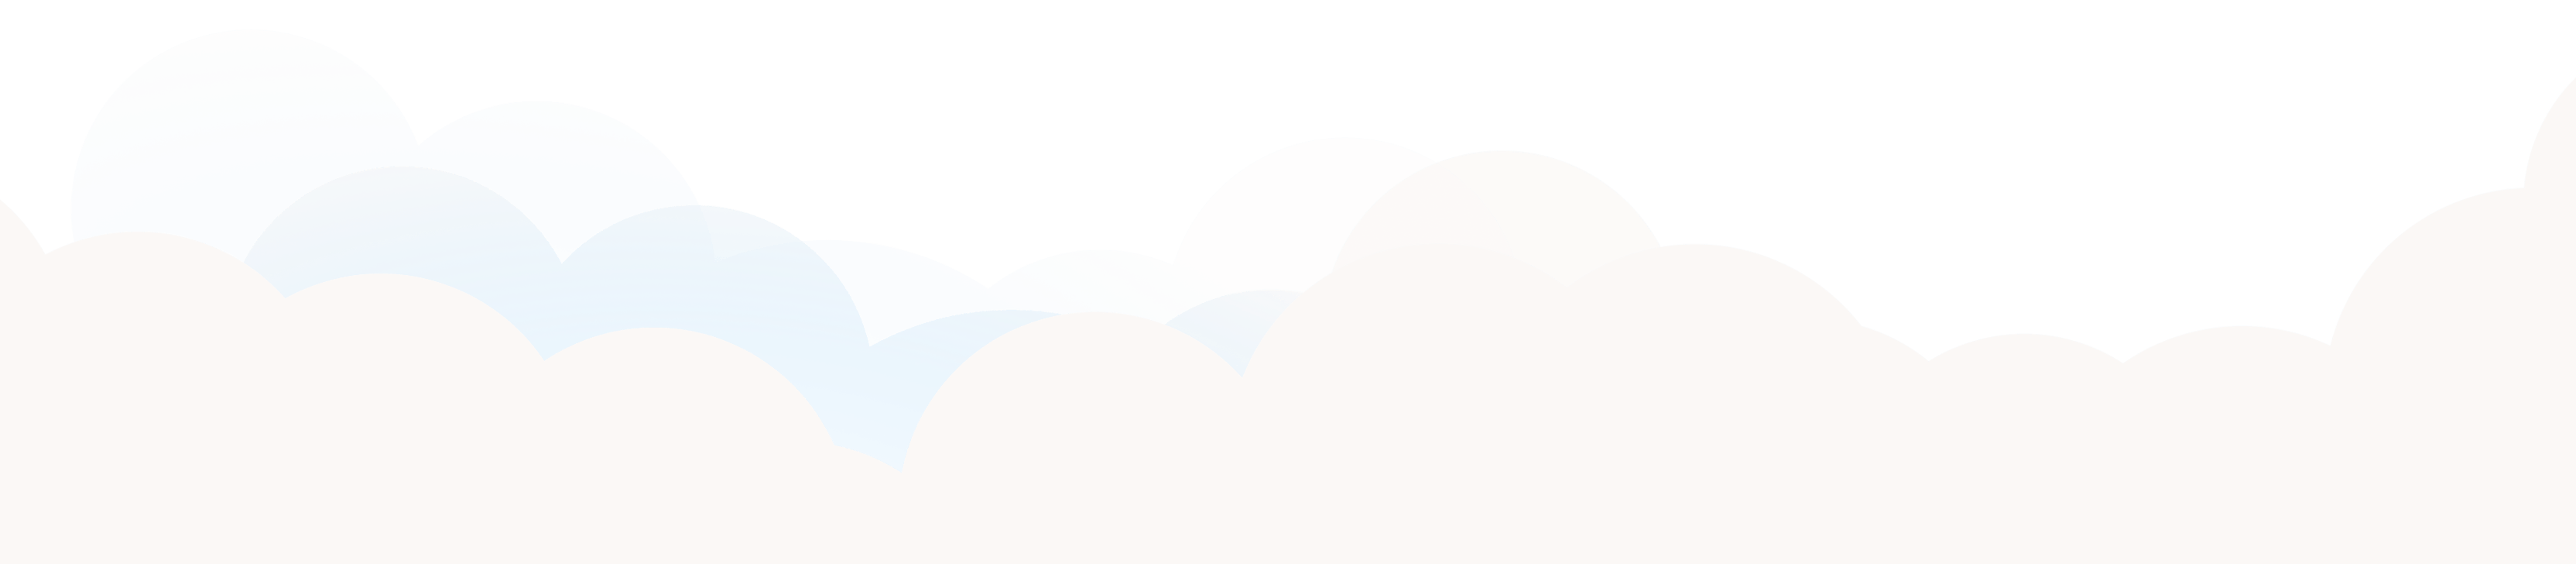 clouds-team